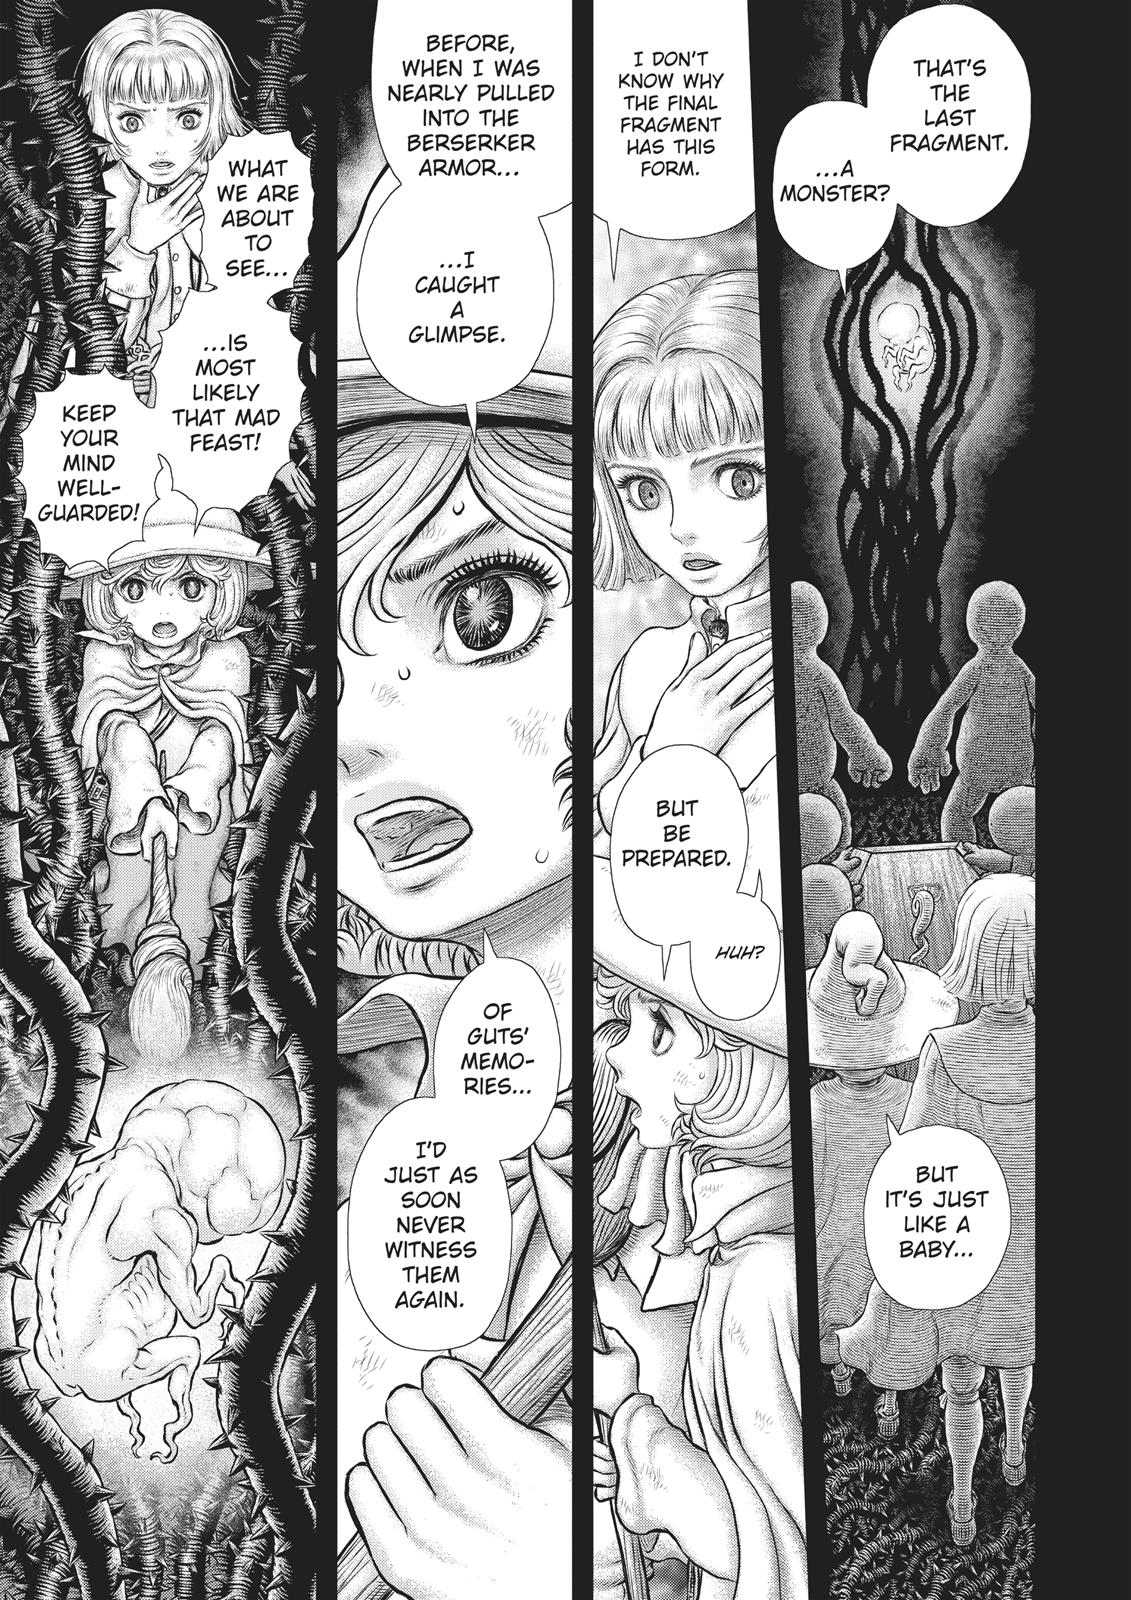 Berserk Manga Chapter 354 image 01